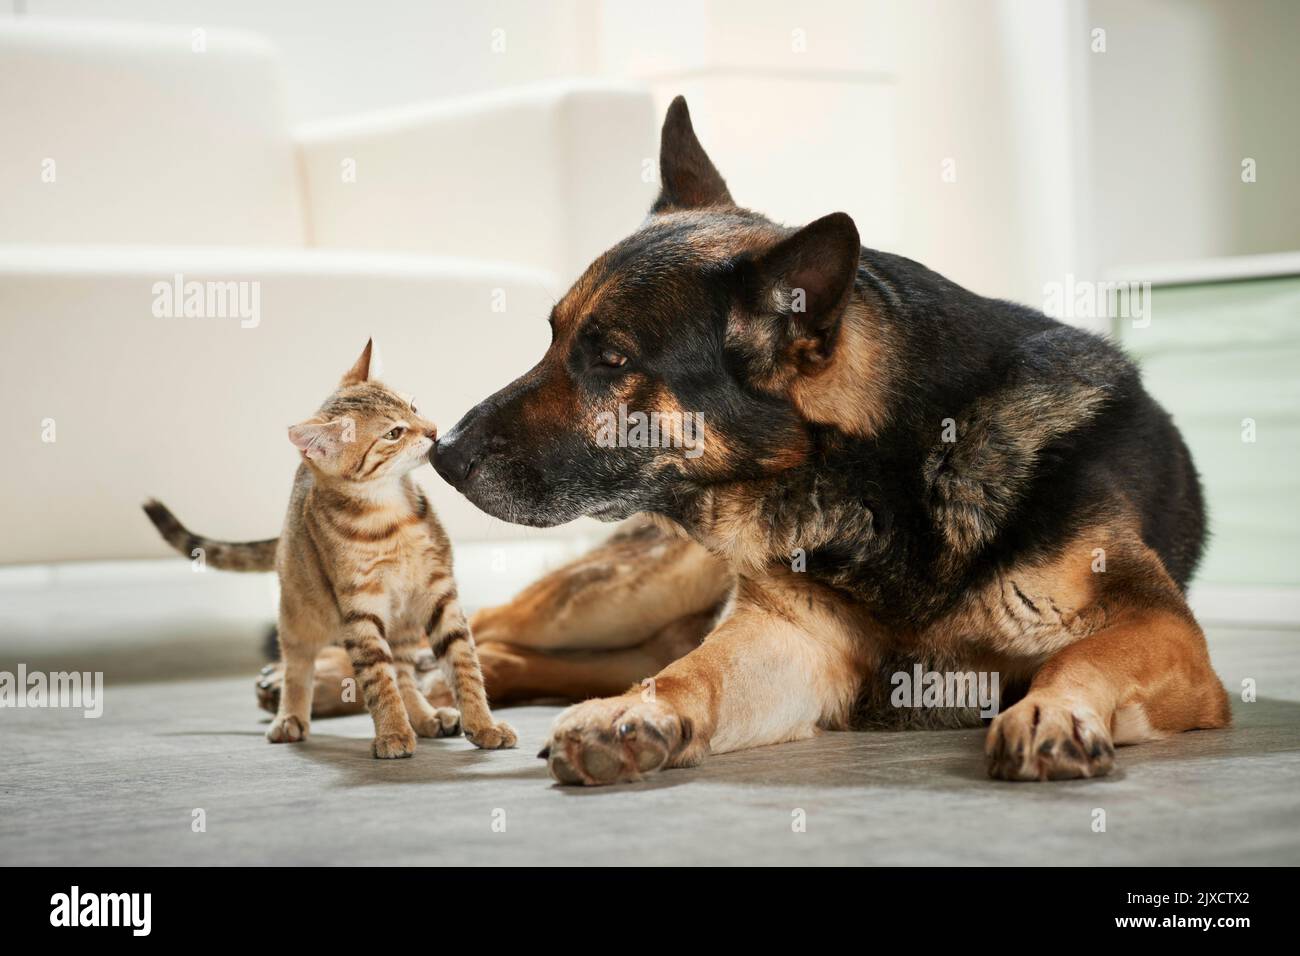 Gato doméstico. El tabby gatito y el perro adulto del pastor alemán se olían unos a otros. Alemania Foto de stock